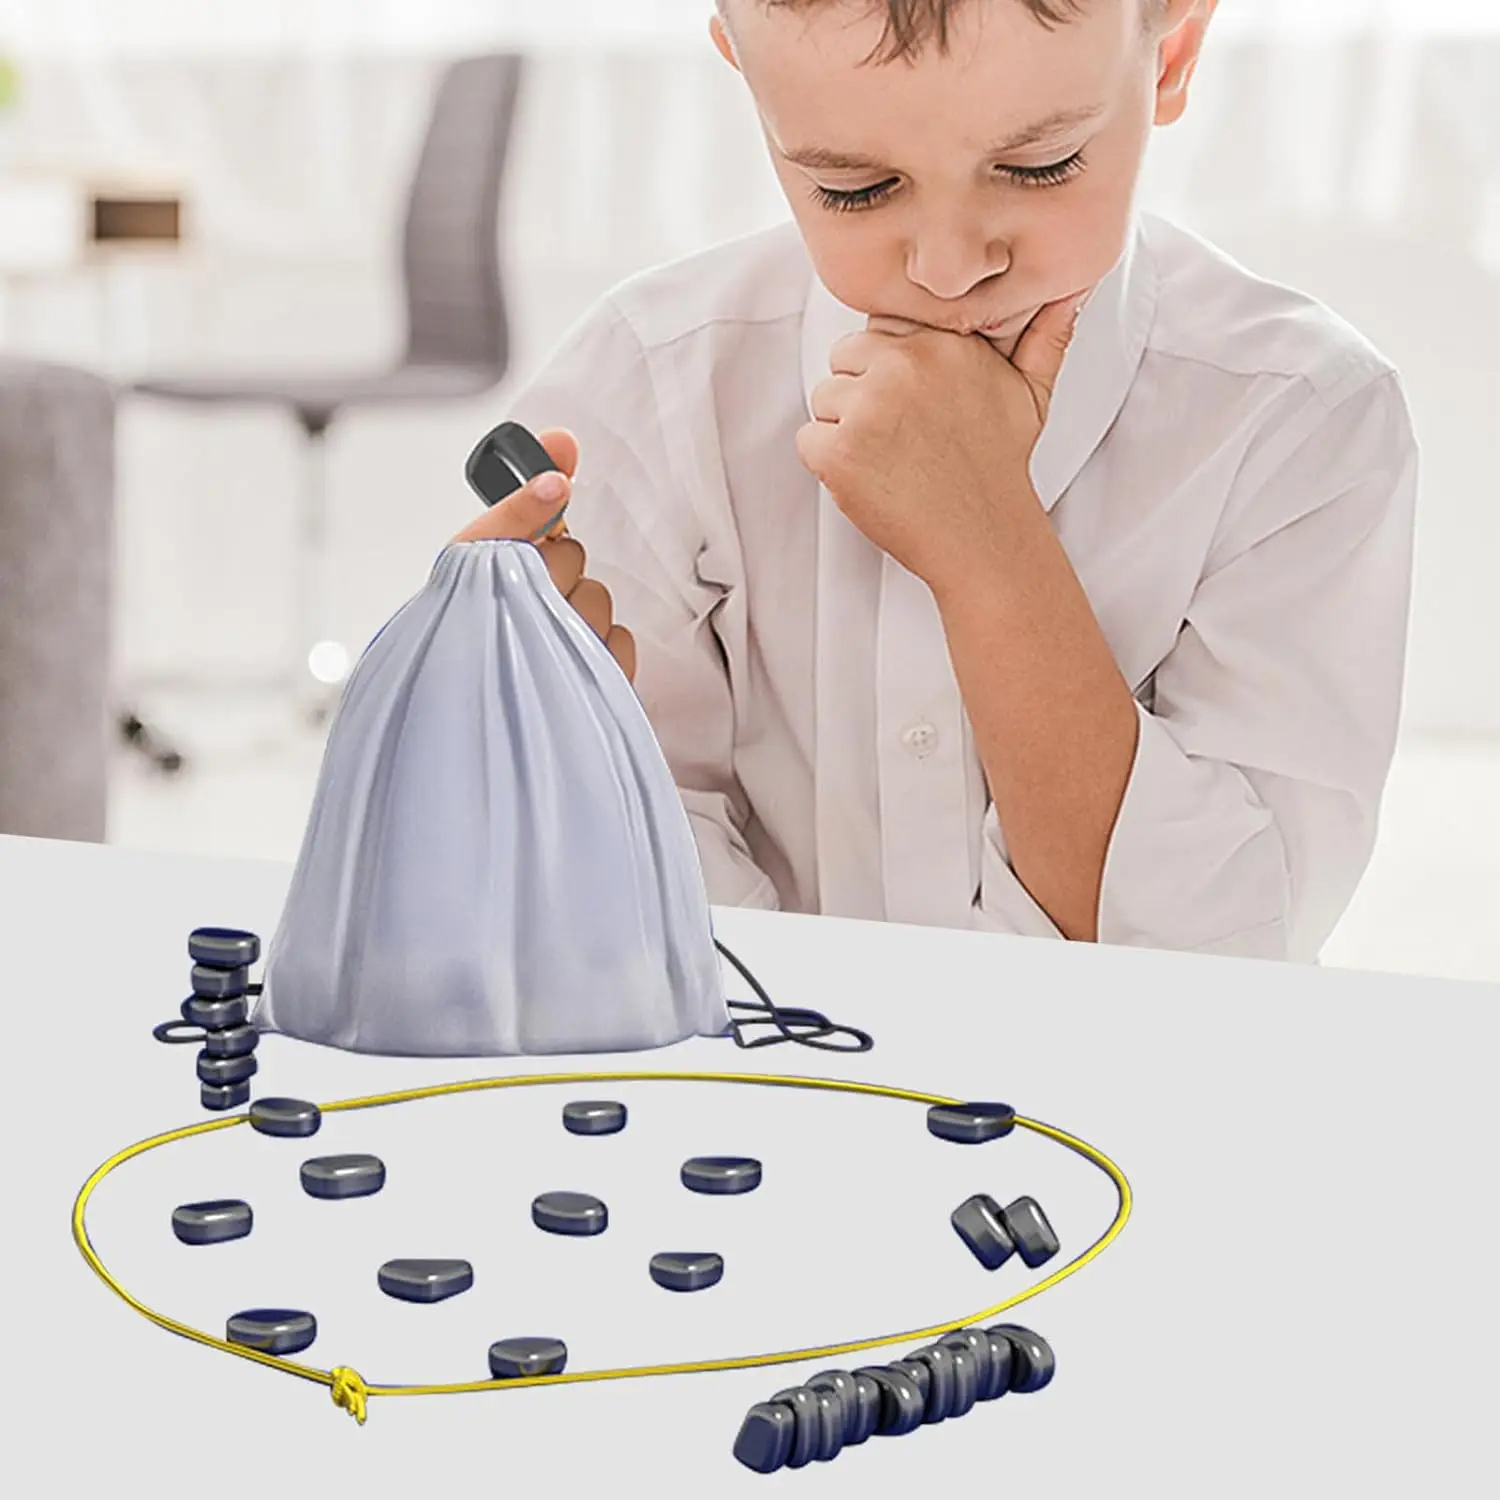 Jeu de construction magnétique pour enfants de 24 pièces avec un enfant jouant